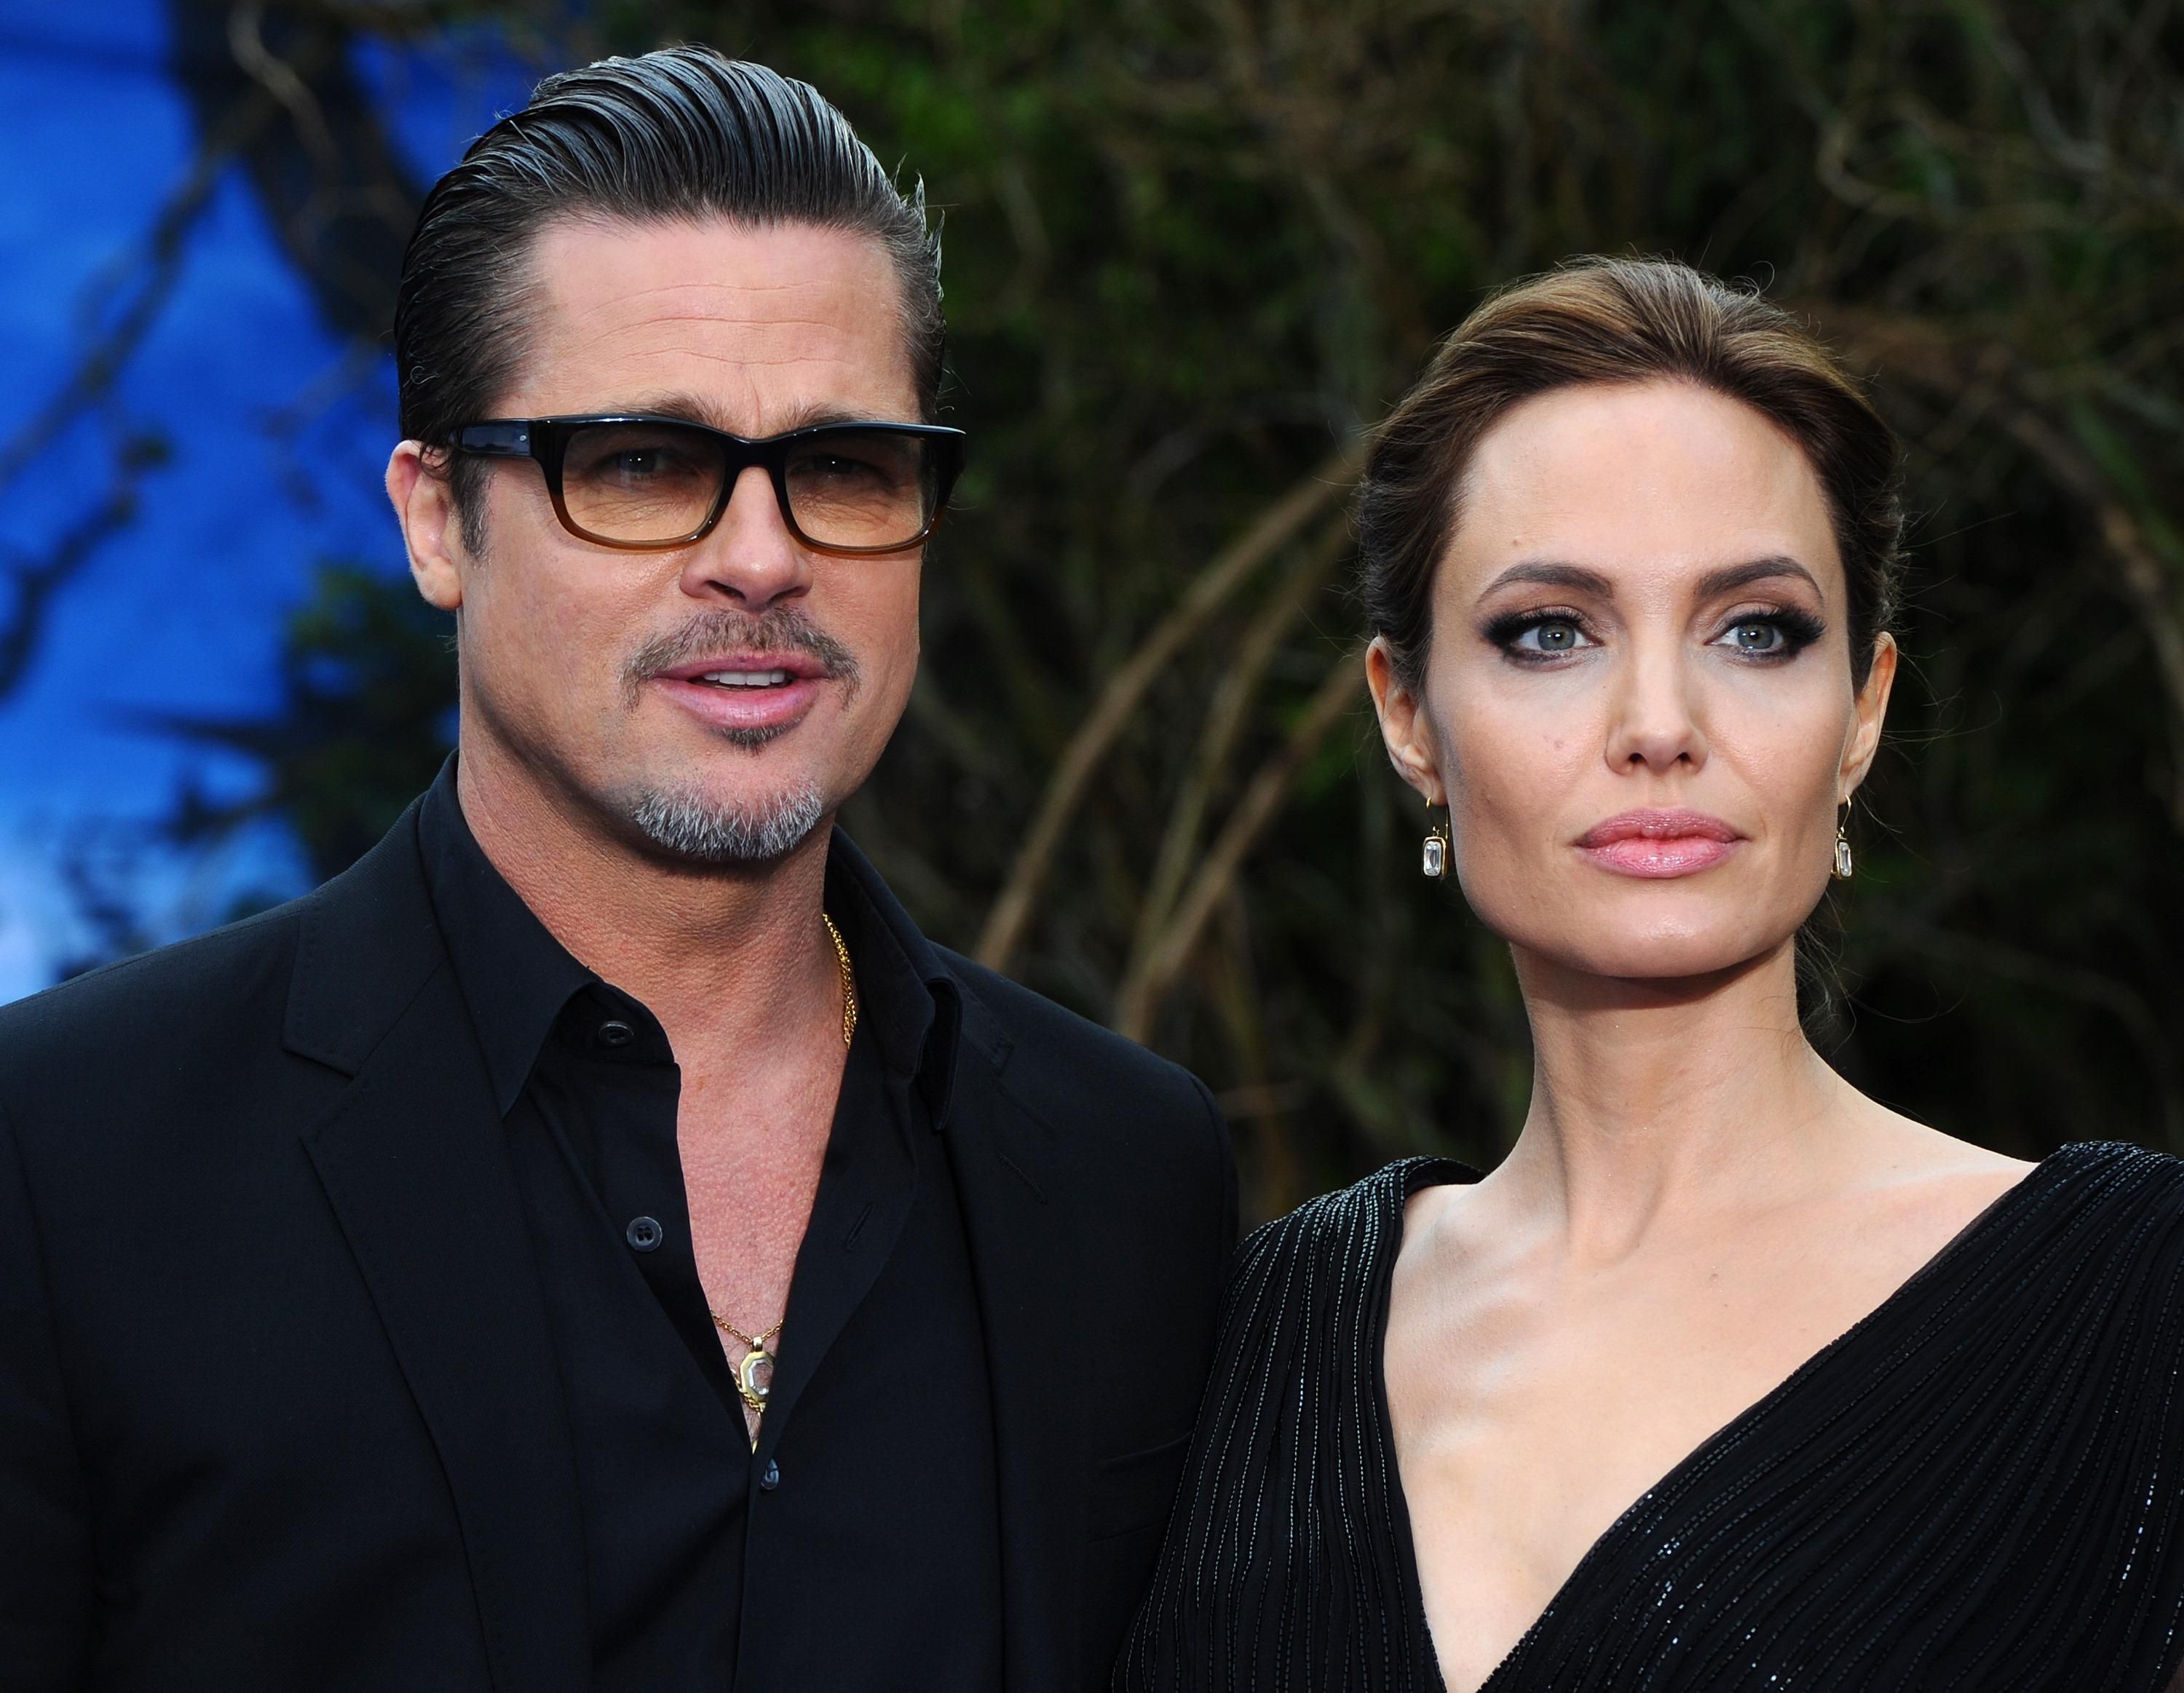 Брэд Питт ответил Анджелине Джоли на ее обращение дисквалифицировать судью: что сказал актер